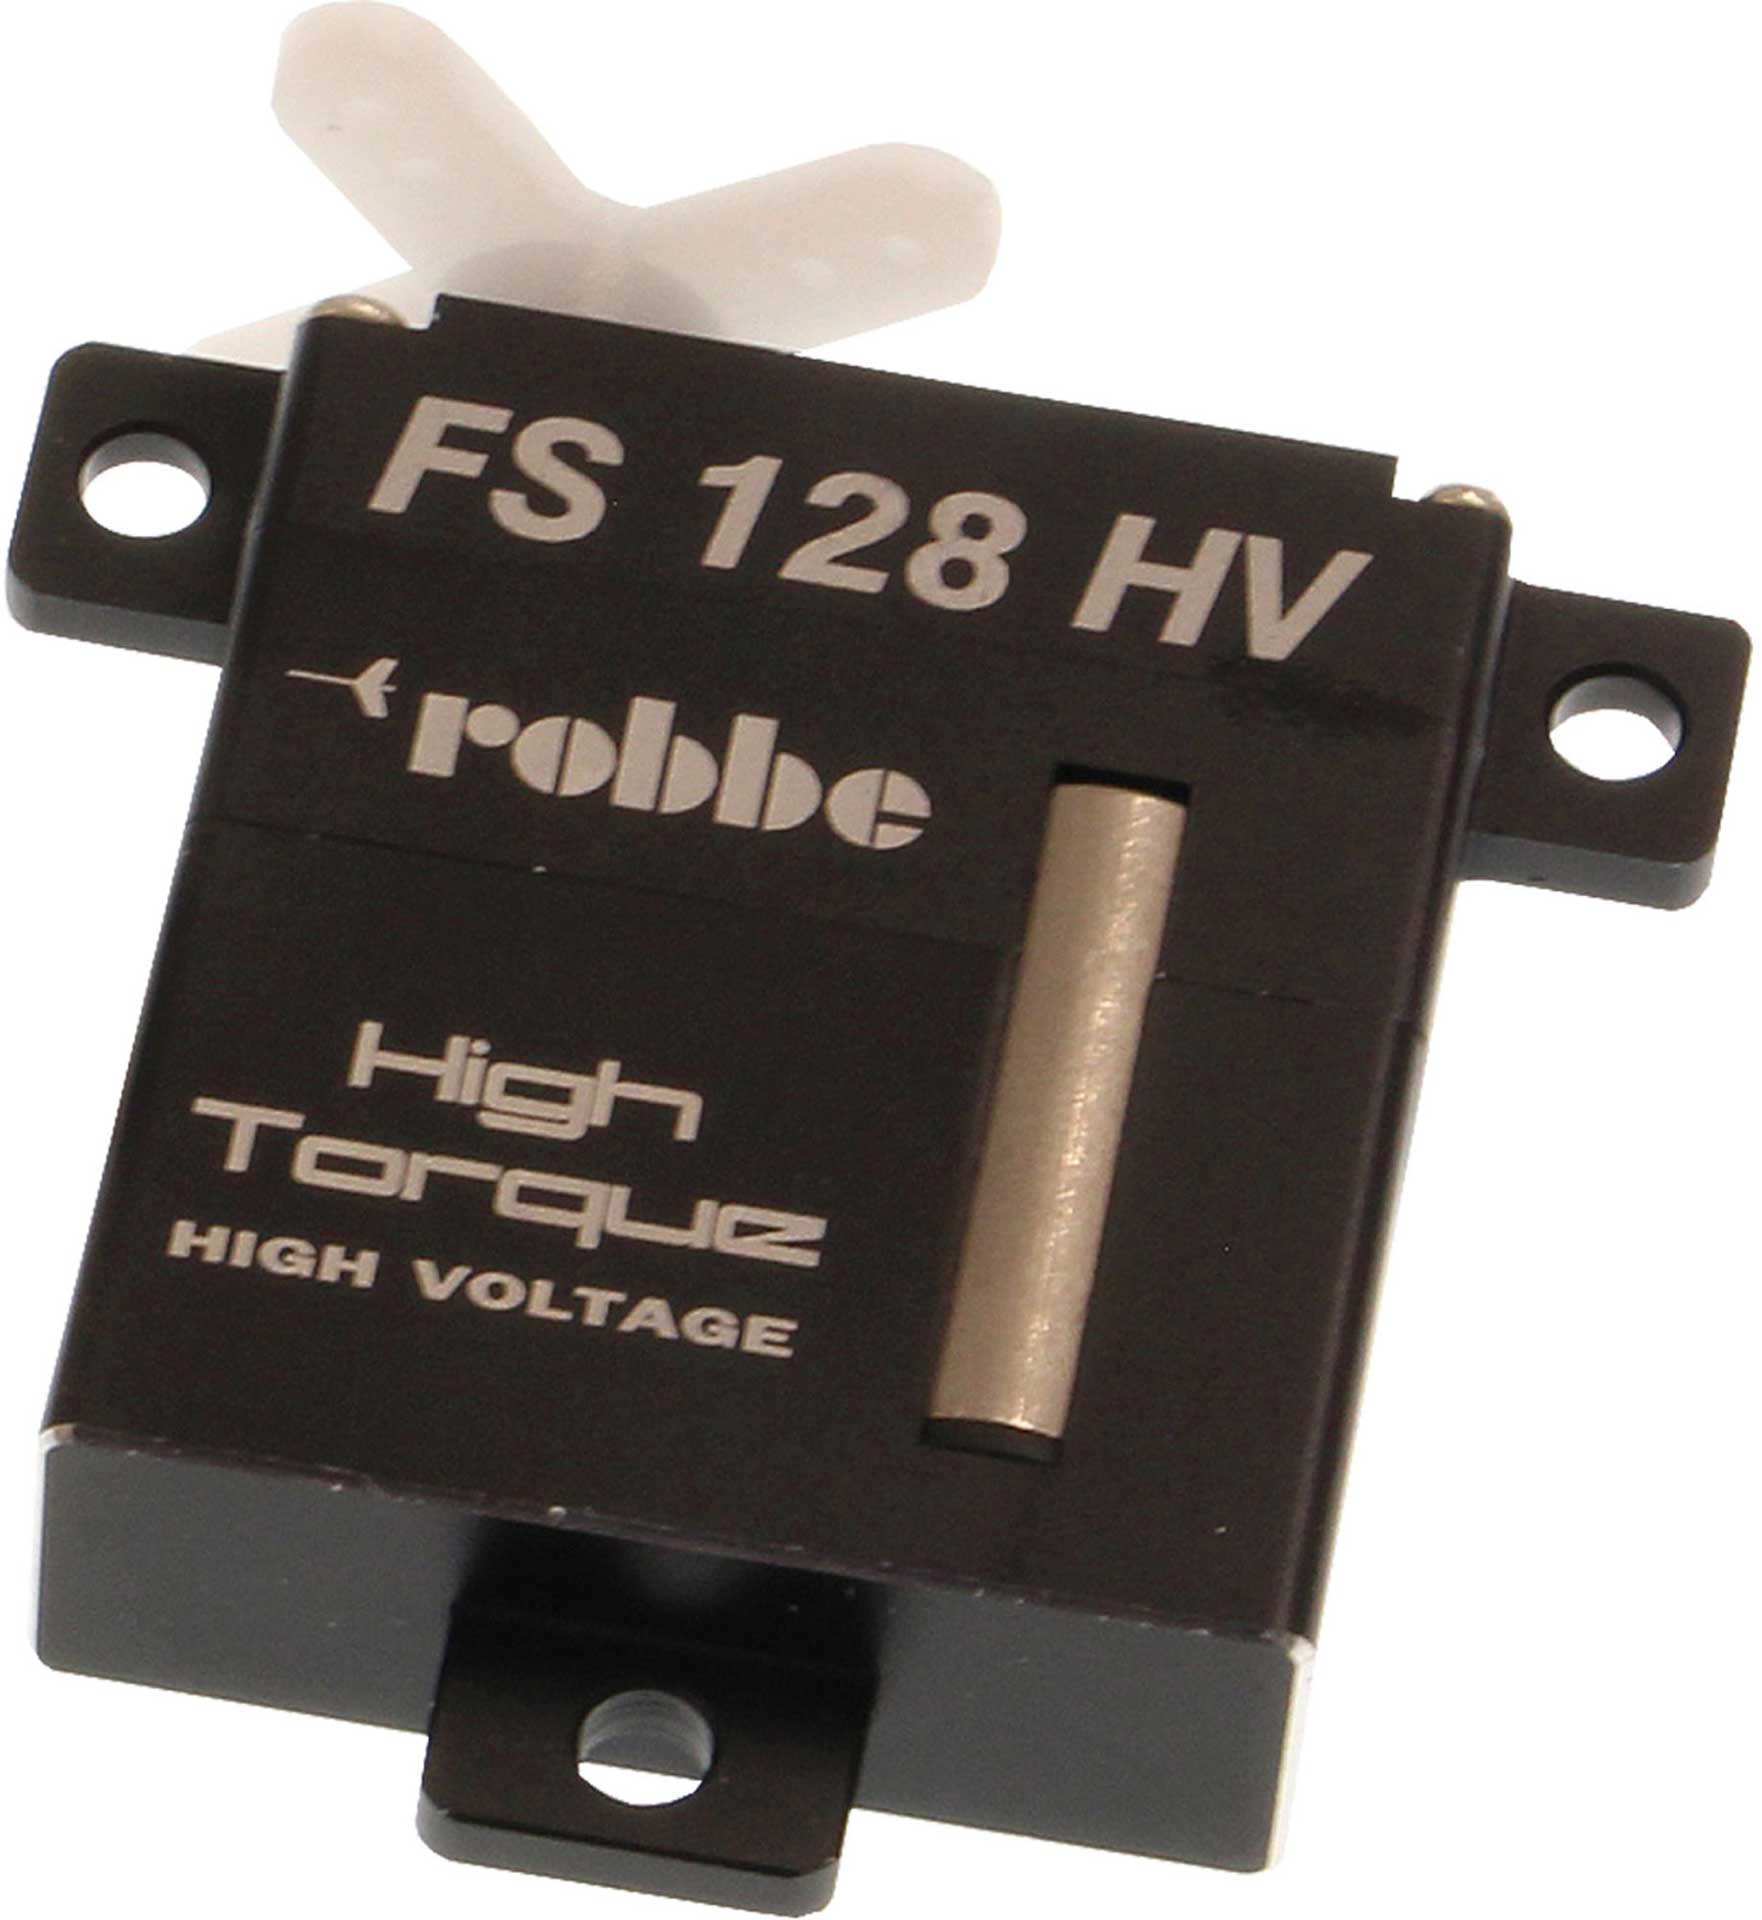 Robbe Modellsport FS 128 BB MG HV DIGITAL SERVO ( Einbau-kompatibel zu X10 )